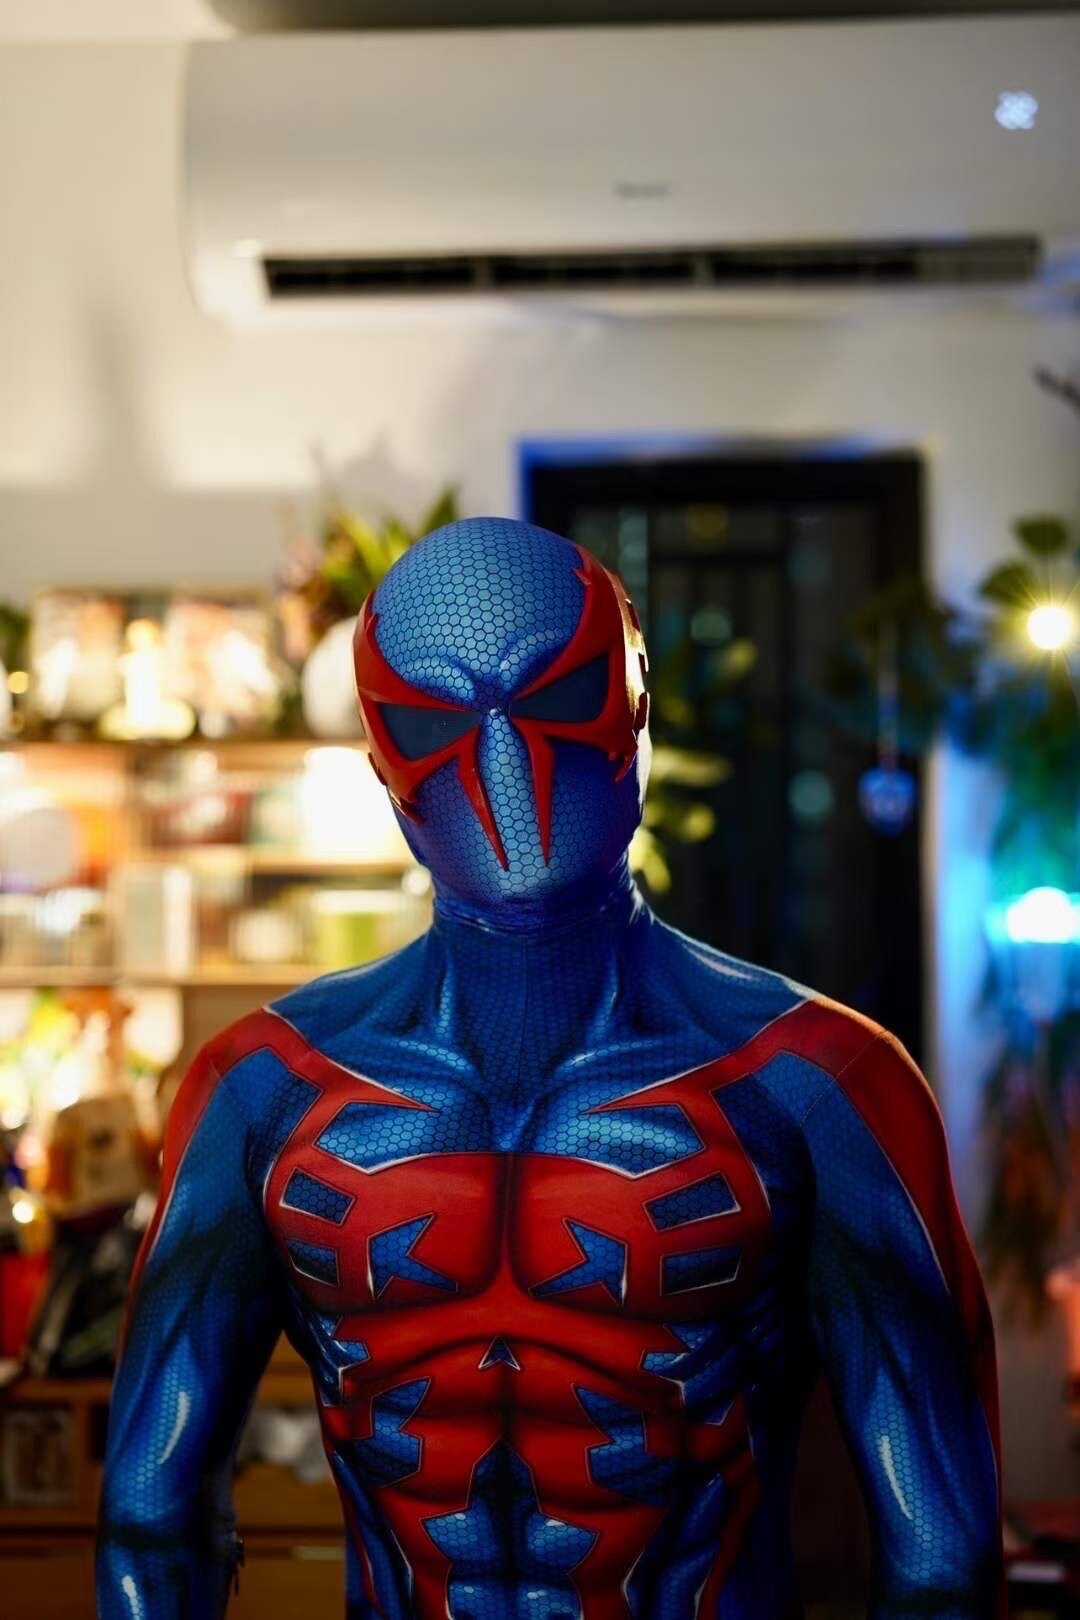 Spider man 2099 cosplay